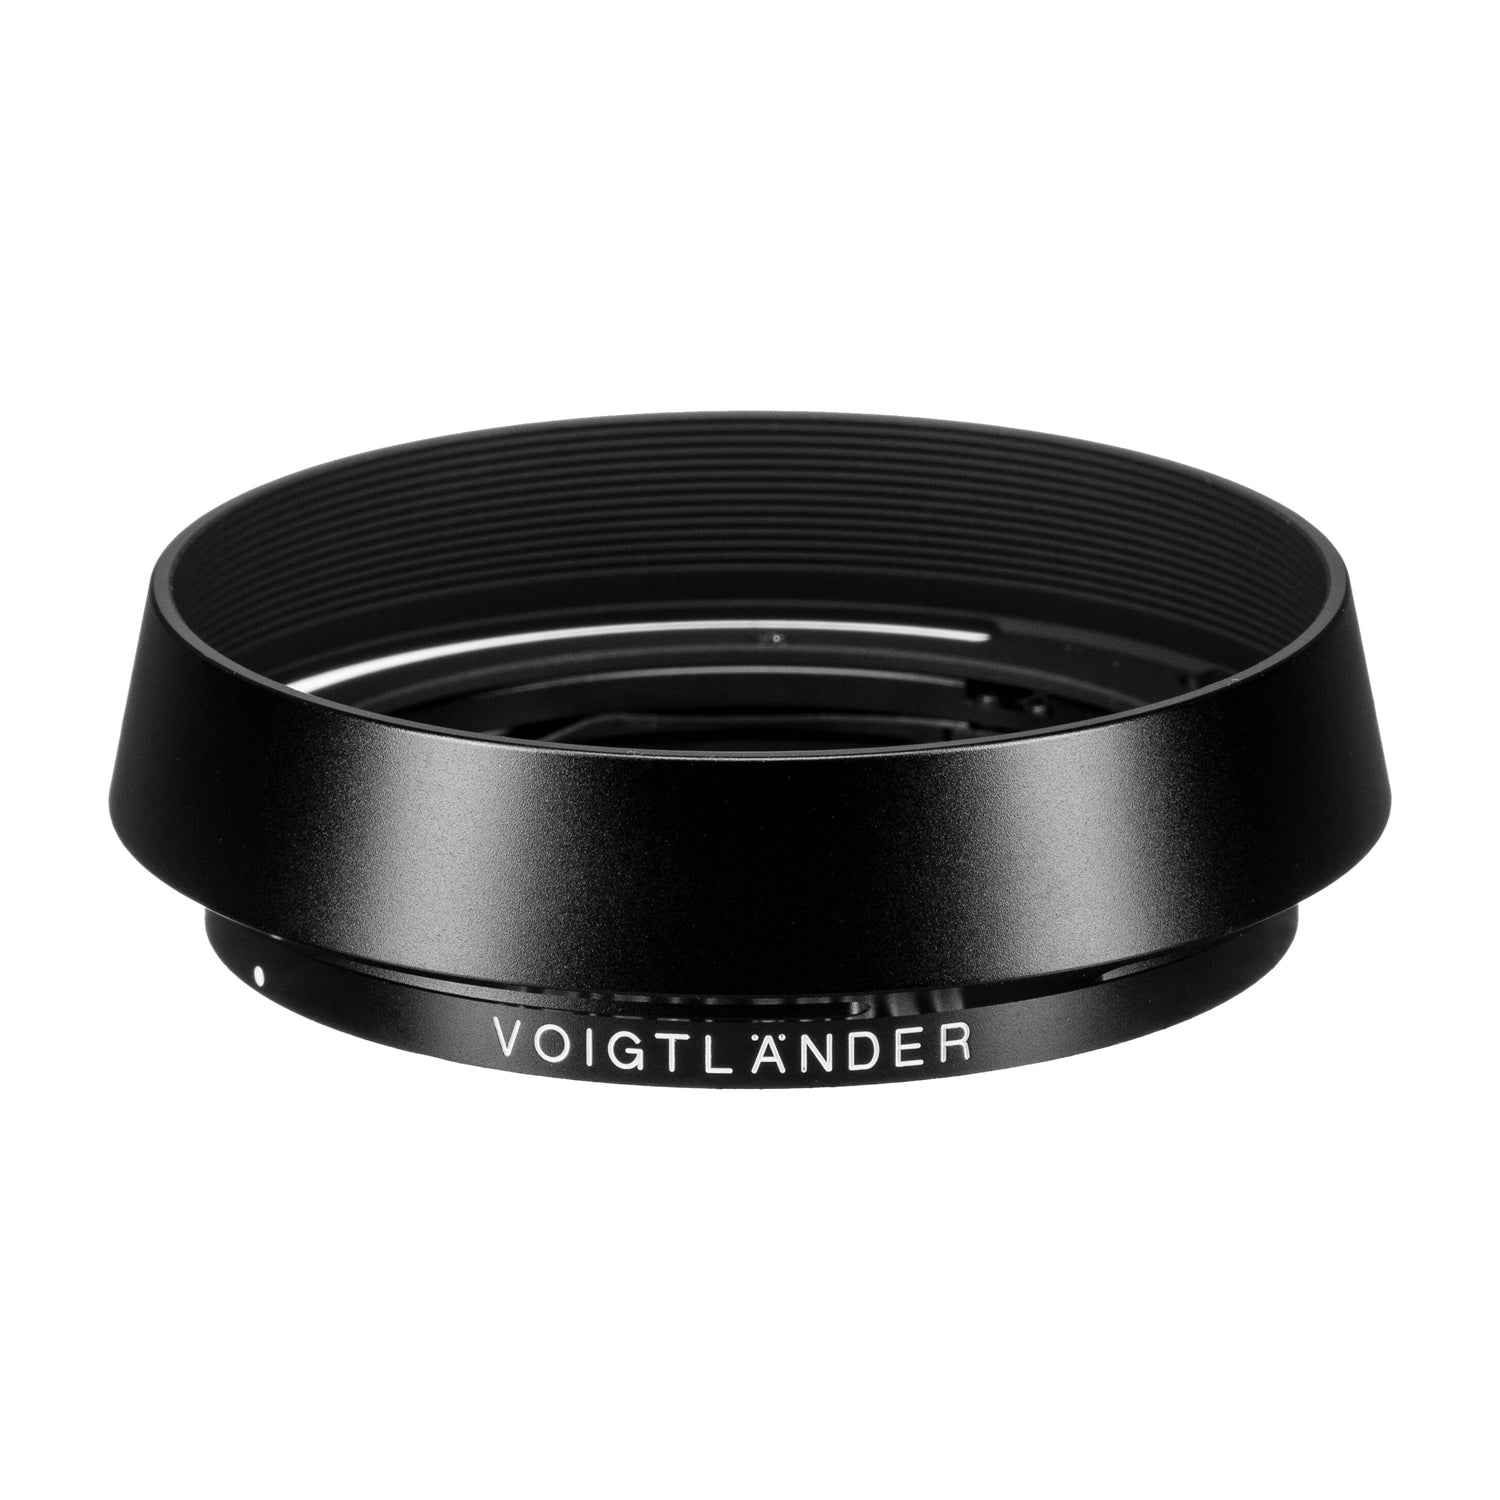 Voigtlander LH-13 Lens Hood for APO-Lanthar 50mm & 35mm f2 Aspherical